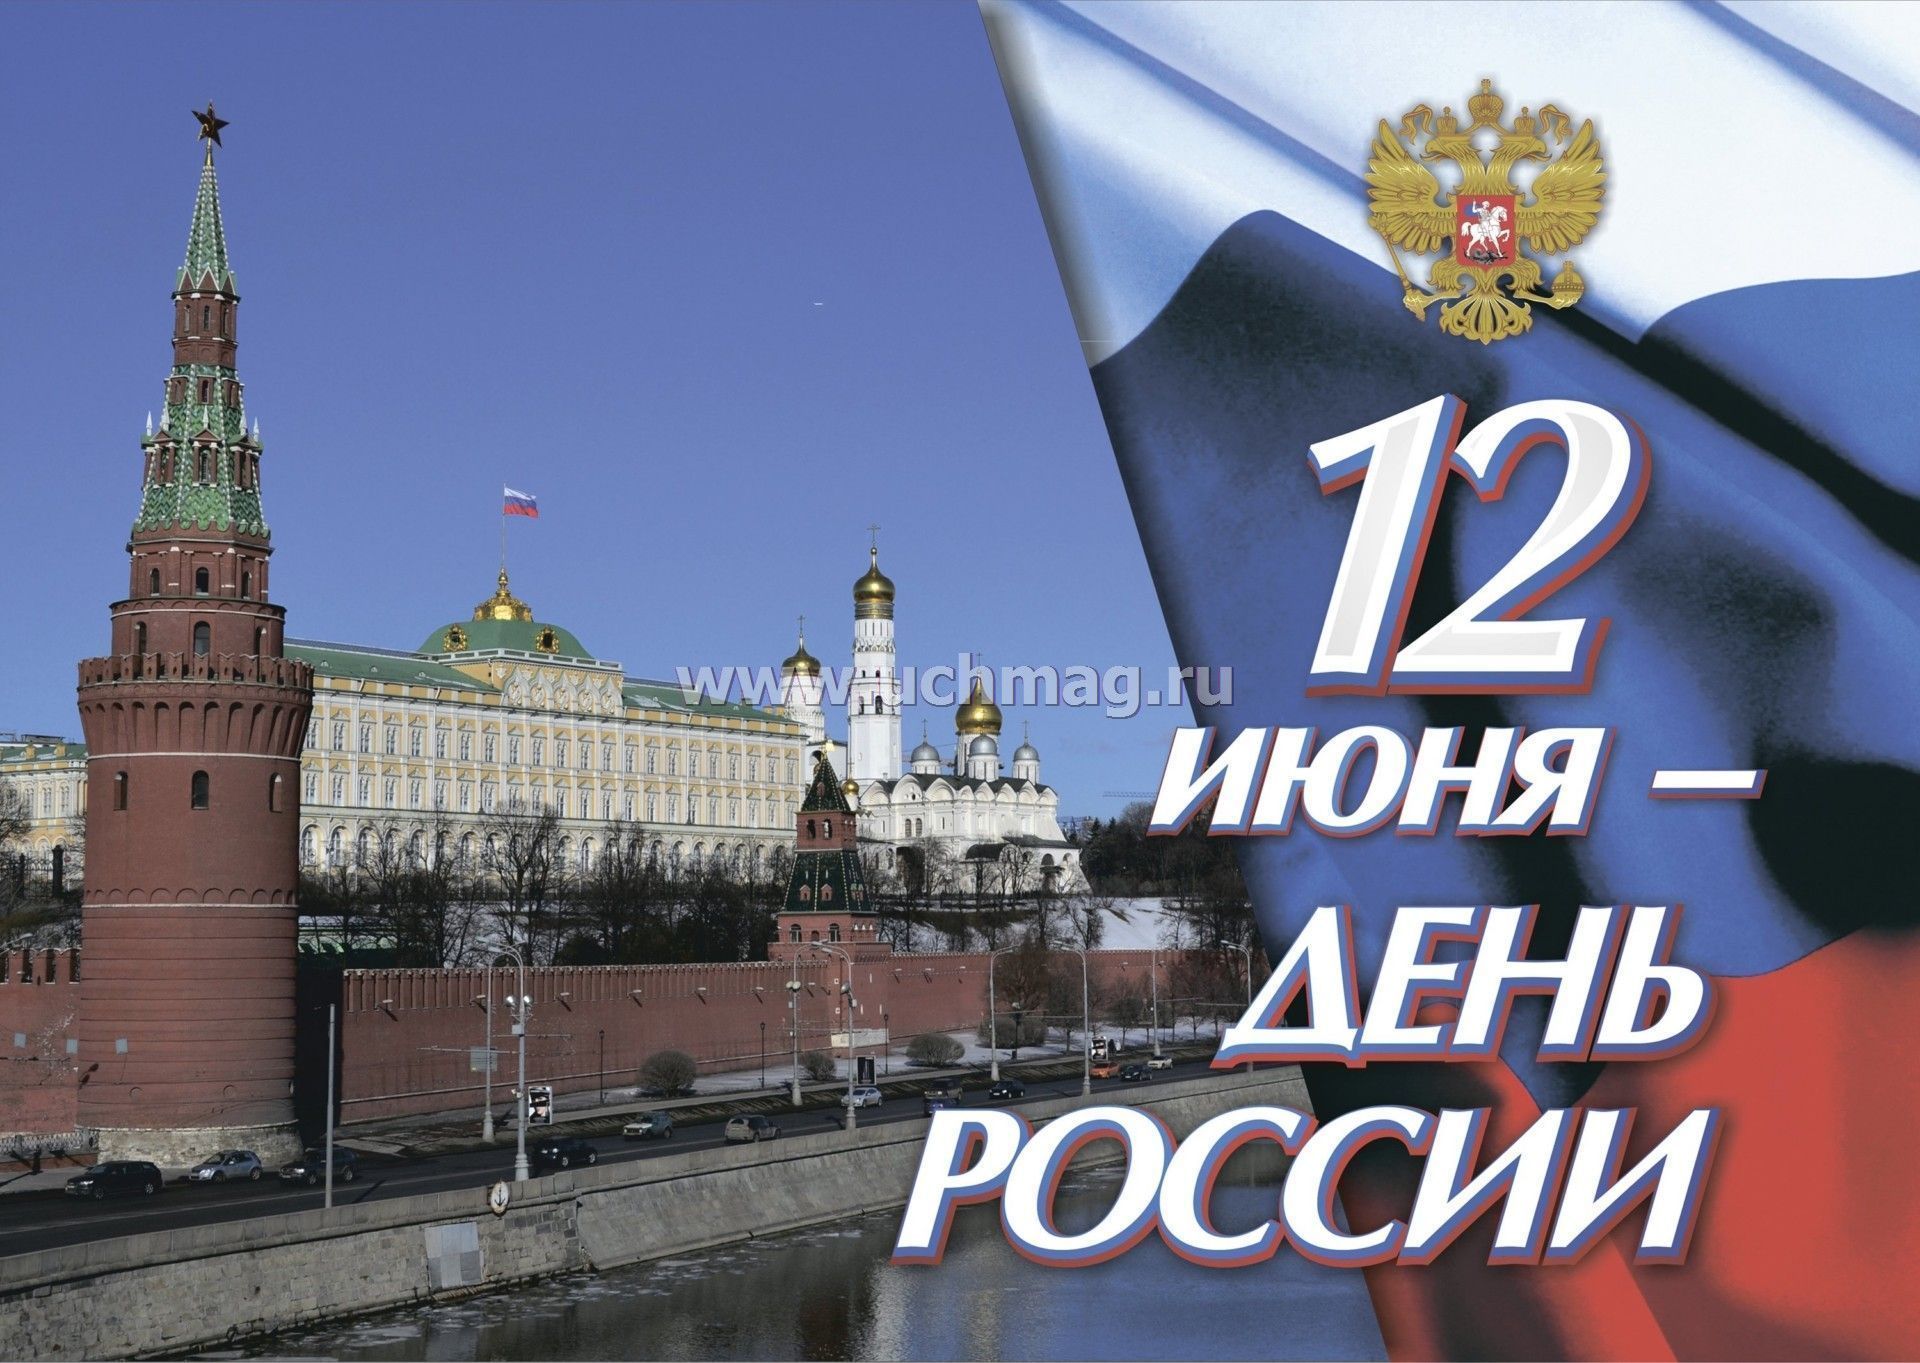 20 лет дня россии